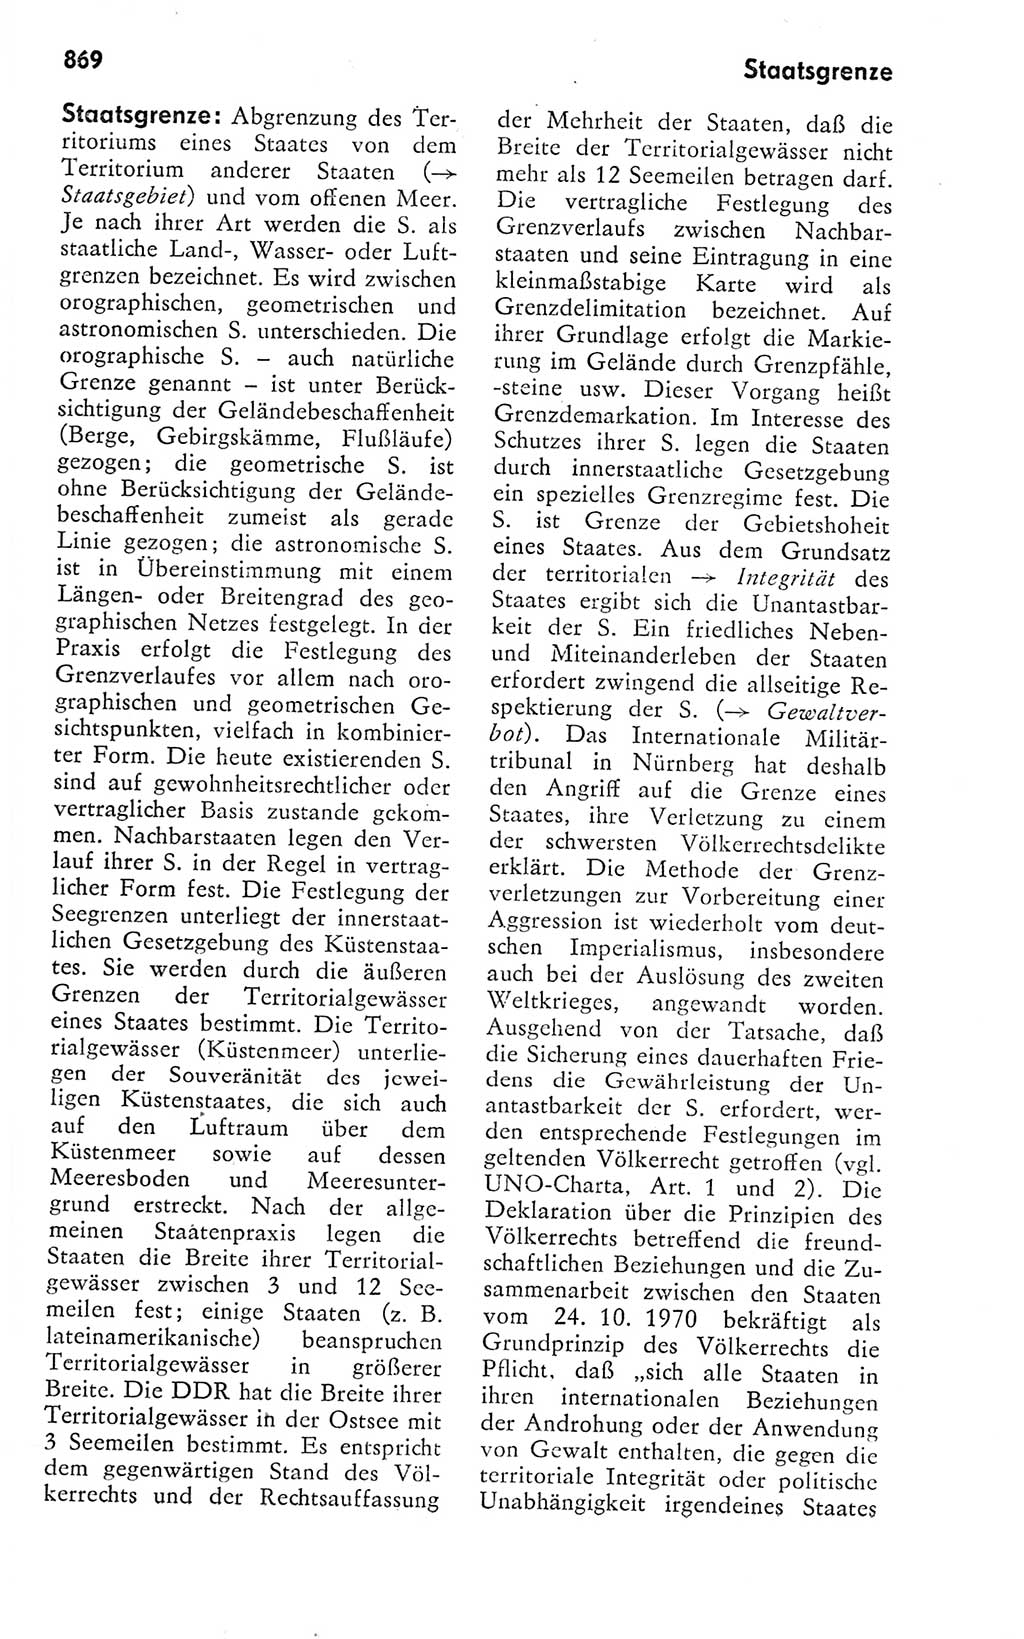 Kleines politisches Wörterbuch [Deutsche Demokratische Republik (DDR)] 1978, Seite 869 (Kl. pol. Wb. DDR 1978, S. 869)